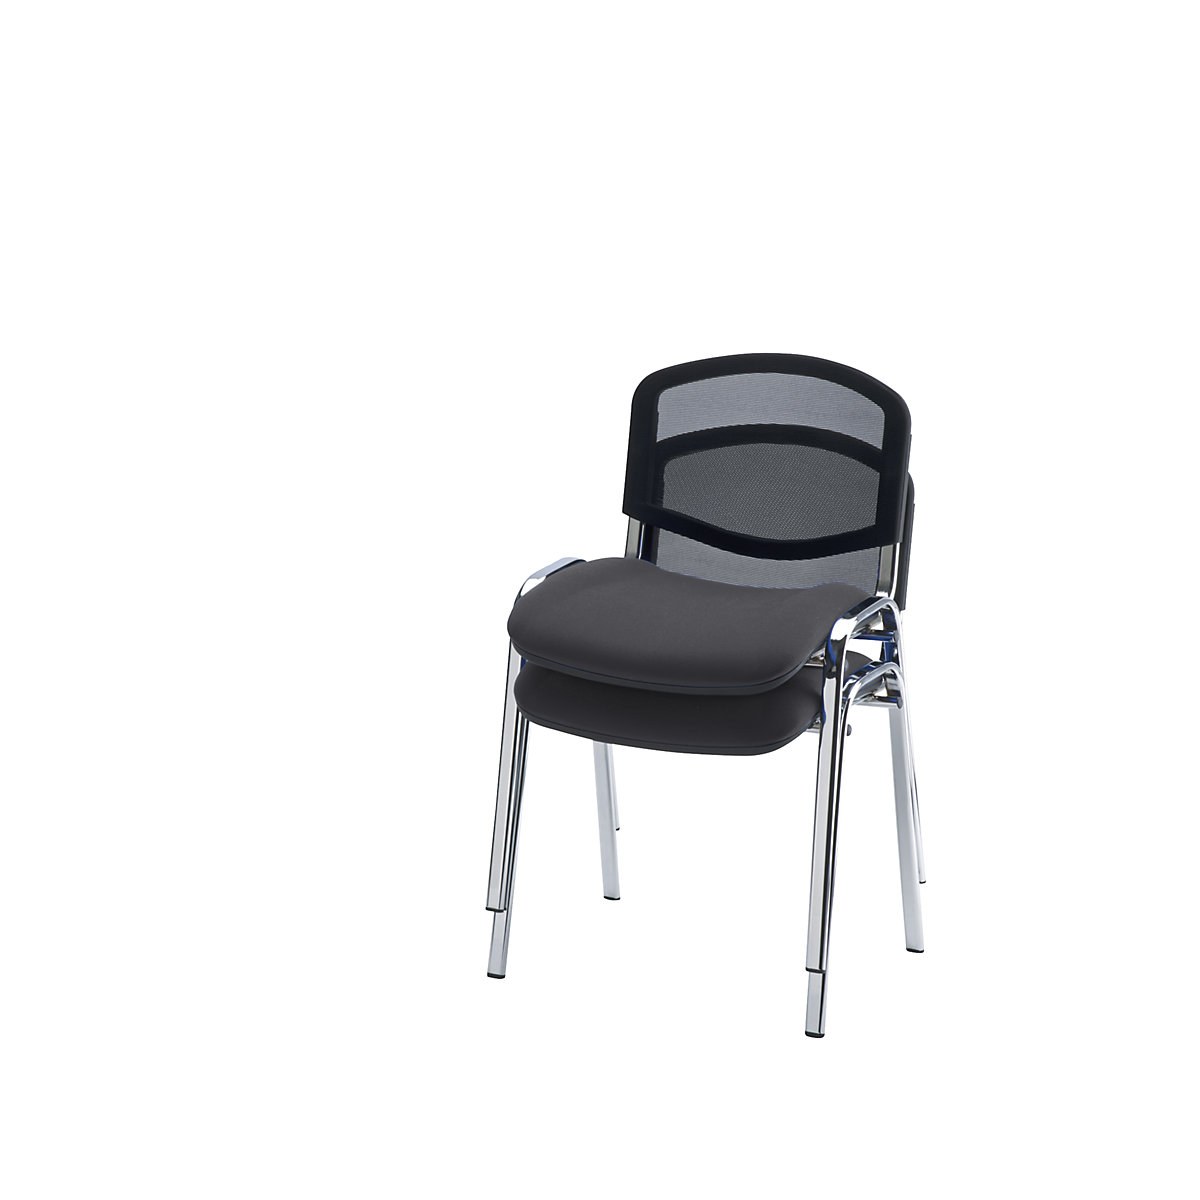 Krzesło dla gości, ustawiane w stos, oparcie z siateczki, szkielet chromowany, obicie antracytowe, opak. 2 szt.-6